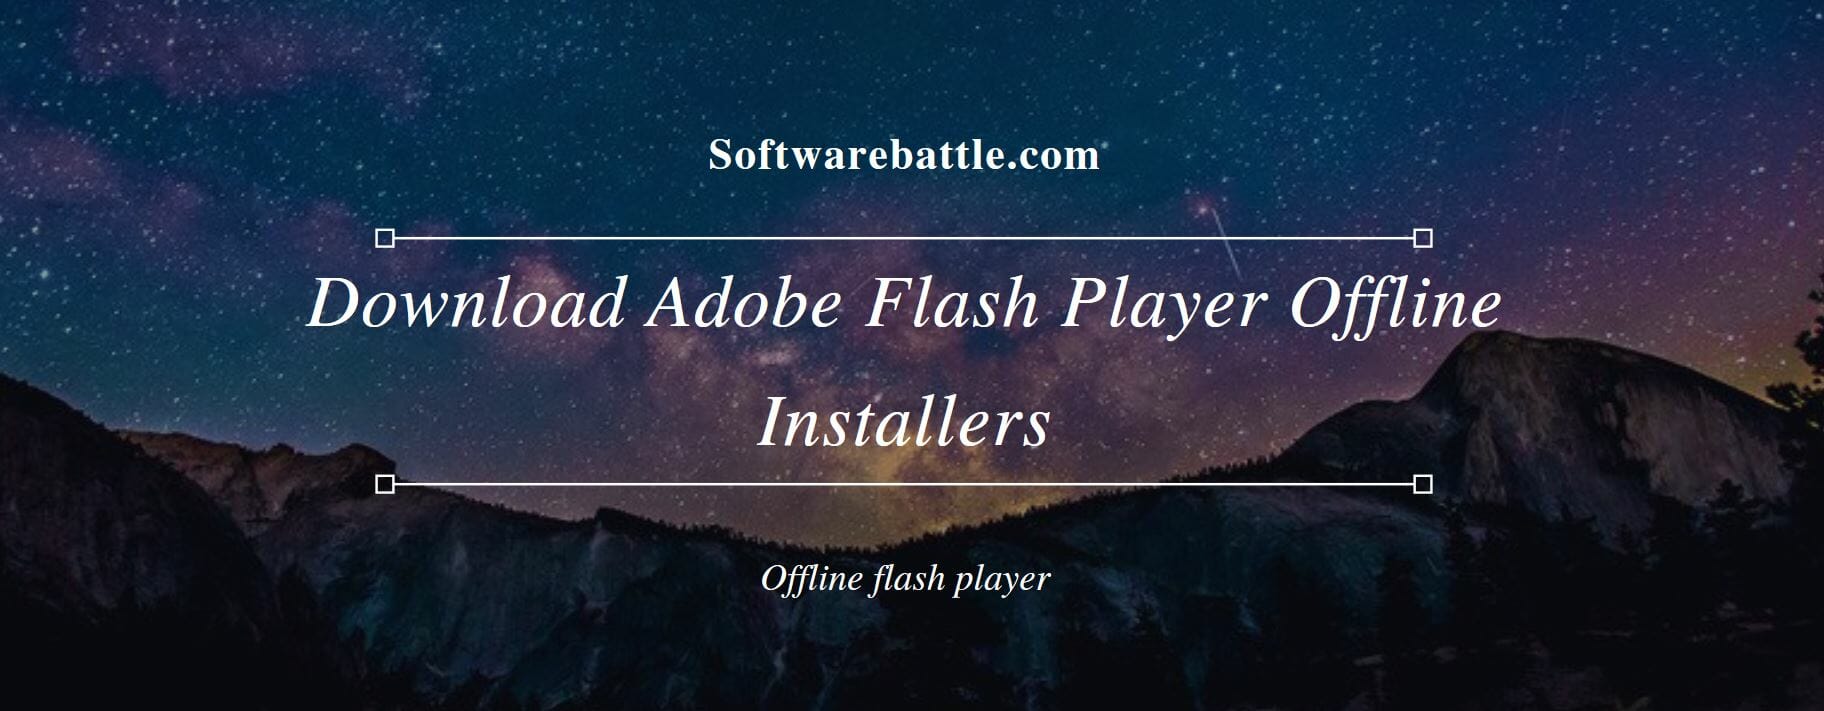 Adobe flash player update offline download